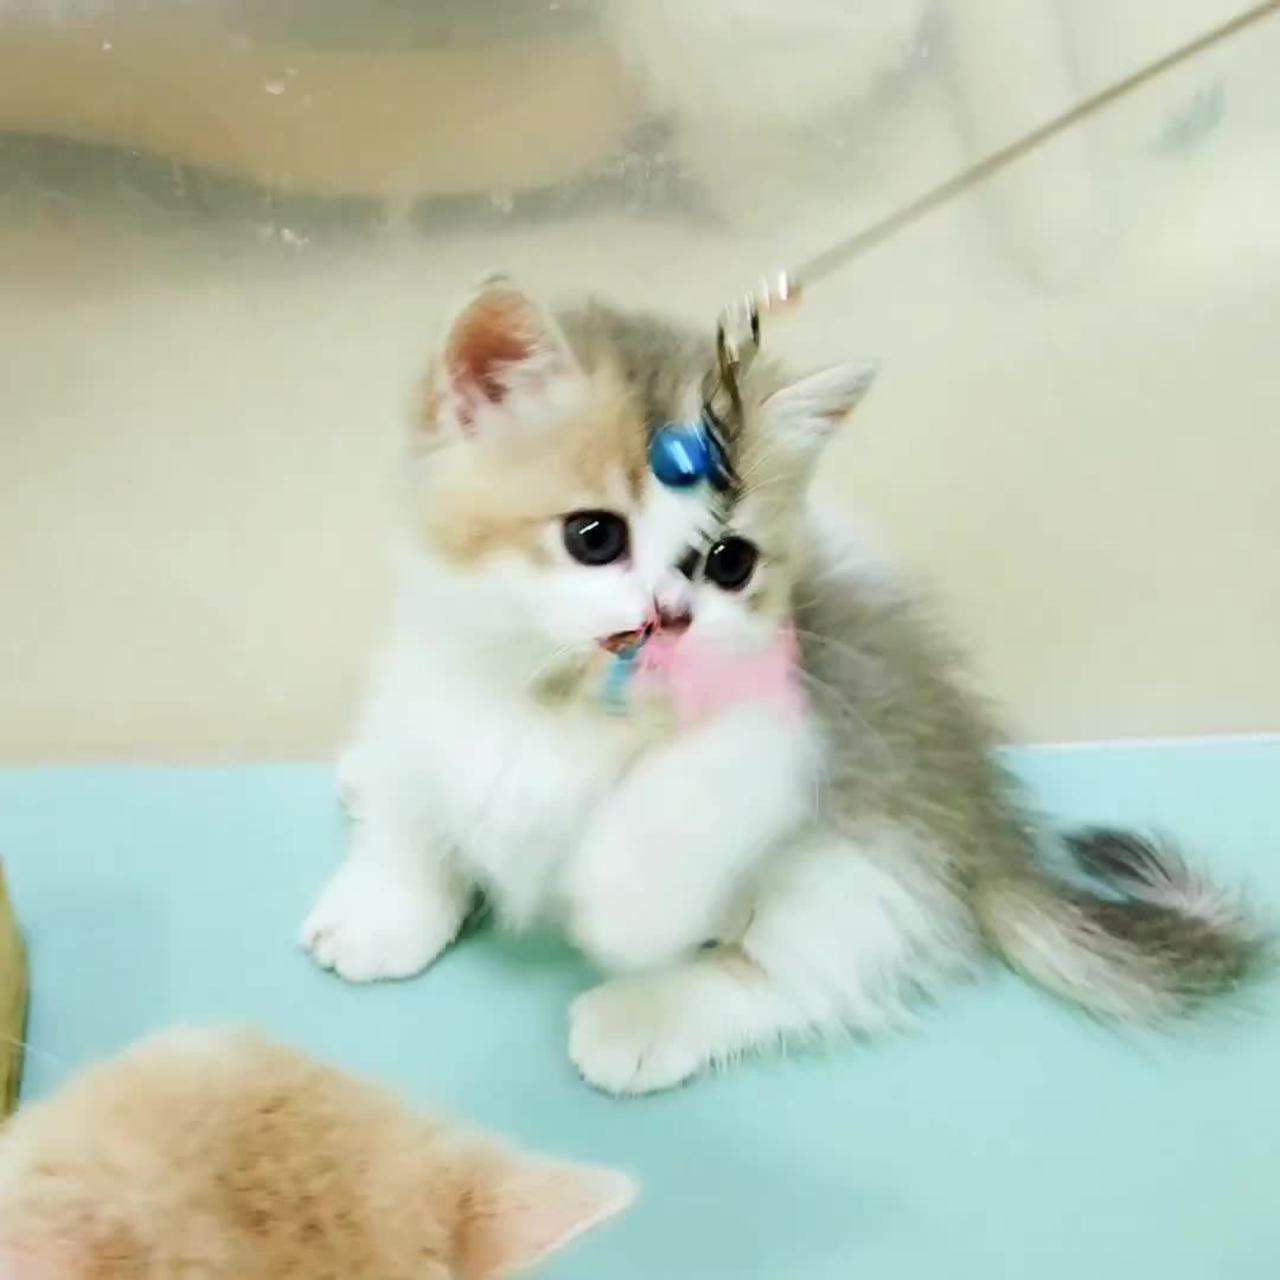 The World Cutest Kitten